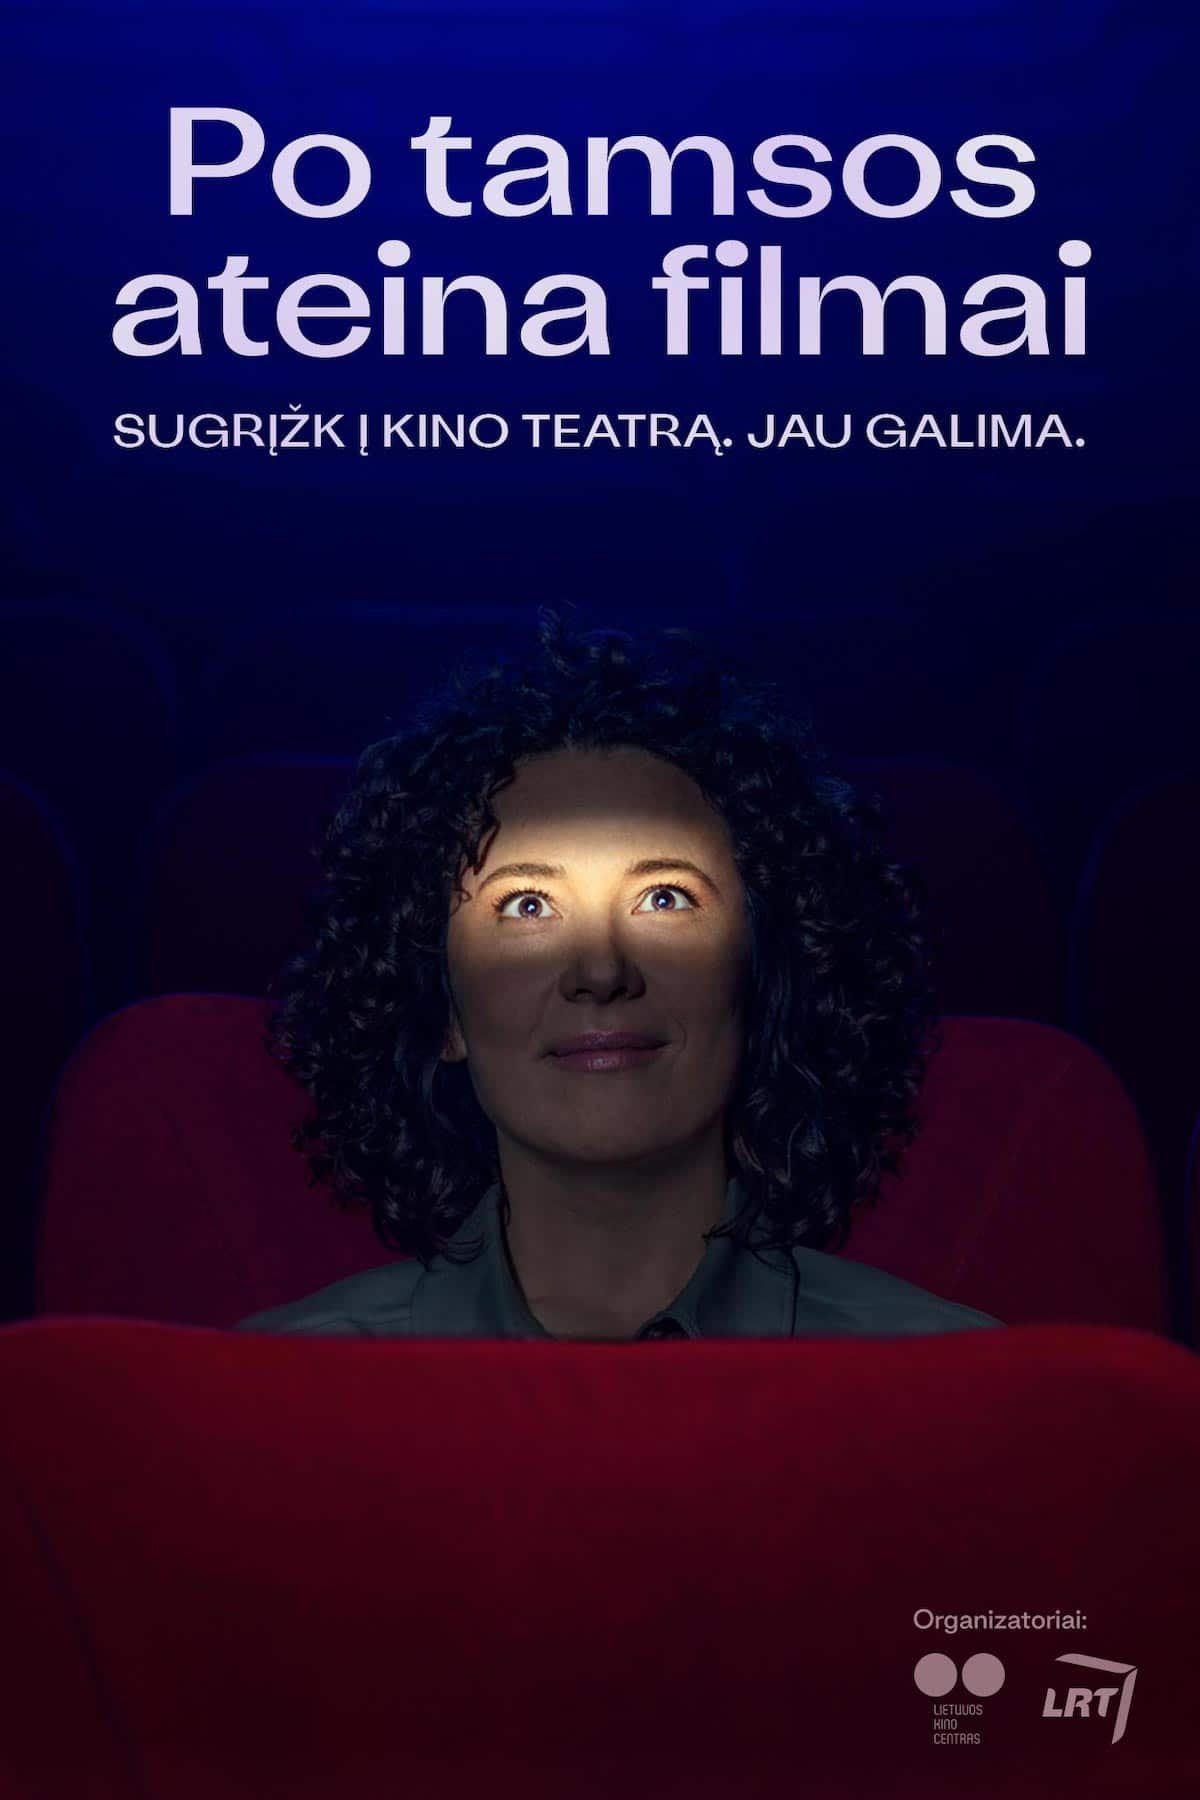 You are currently viewing Nacionalinė kampanija „Po tamsos ateina filmai“ kviečia žiūrovus sugrįžti į kino teatrus